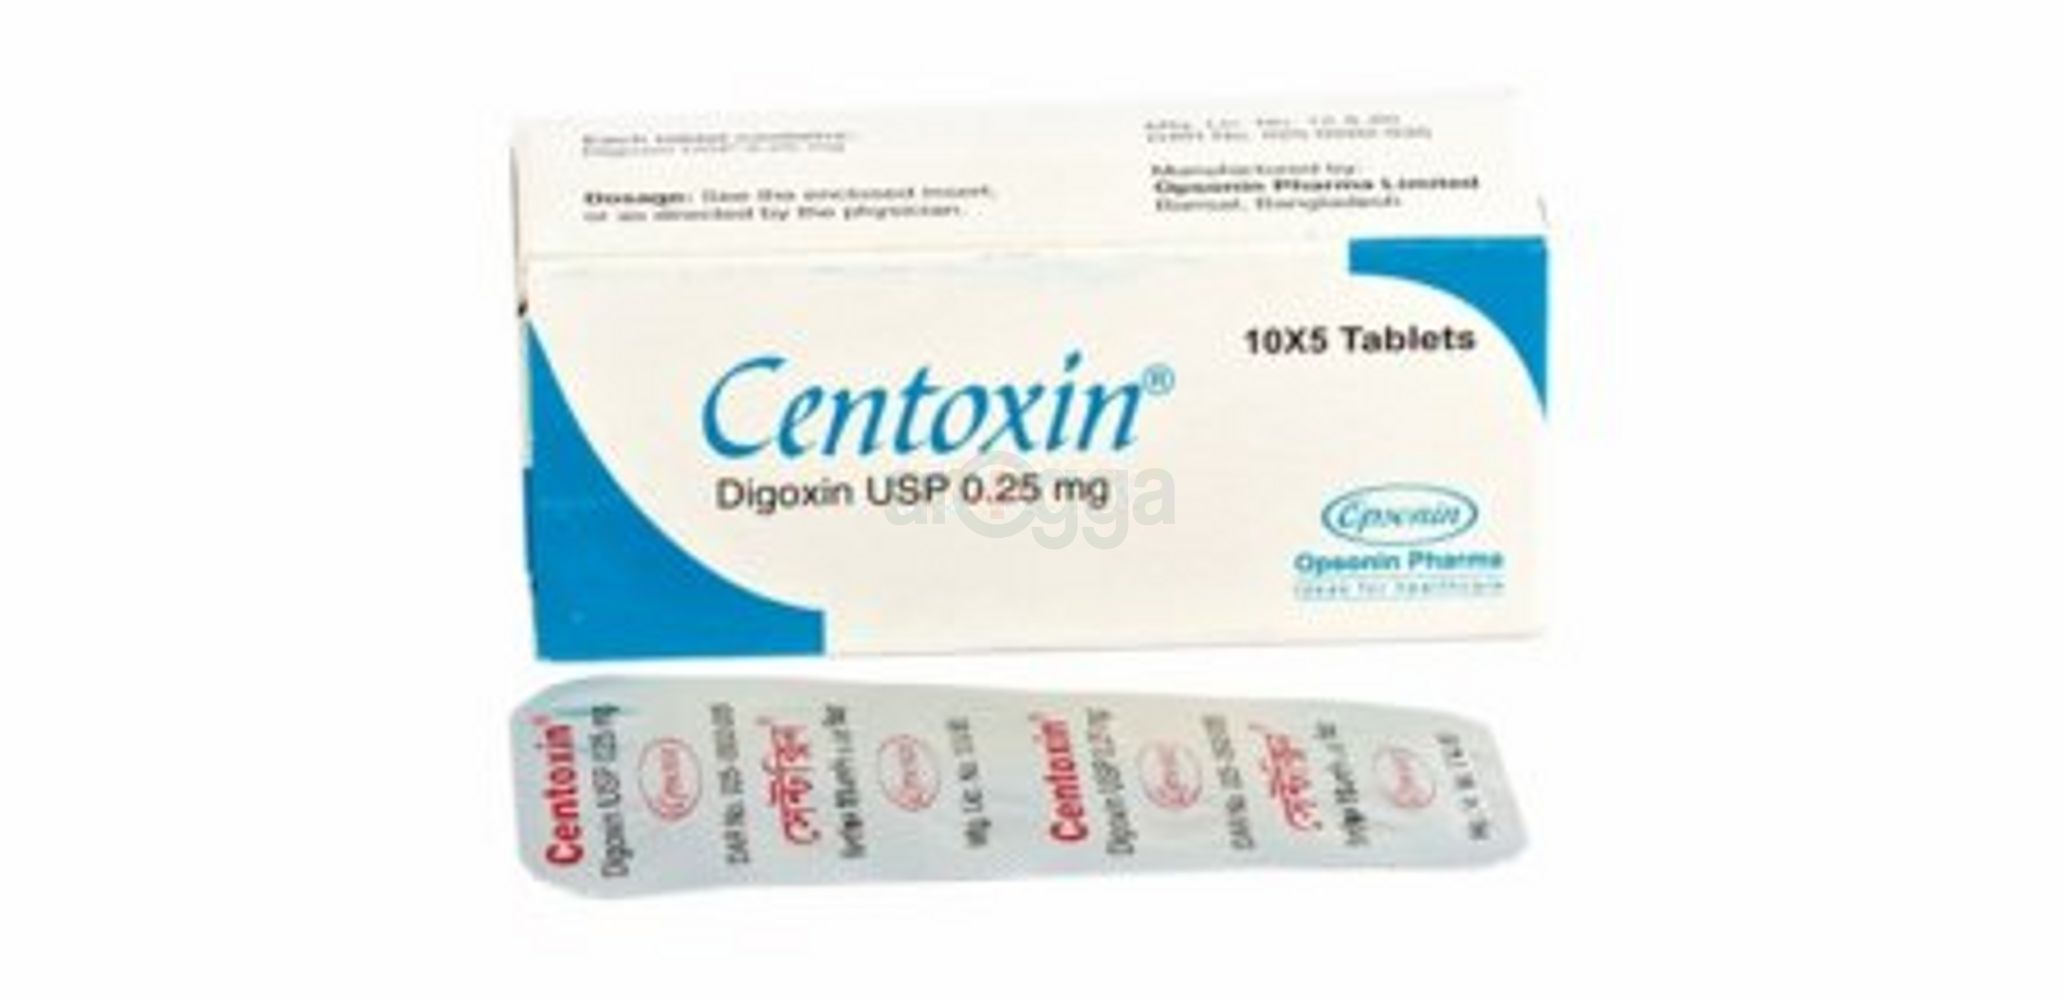 Centoxin